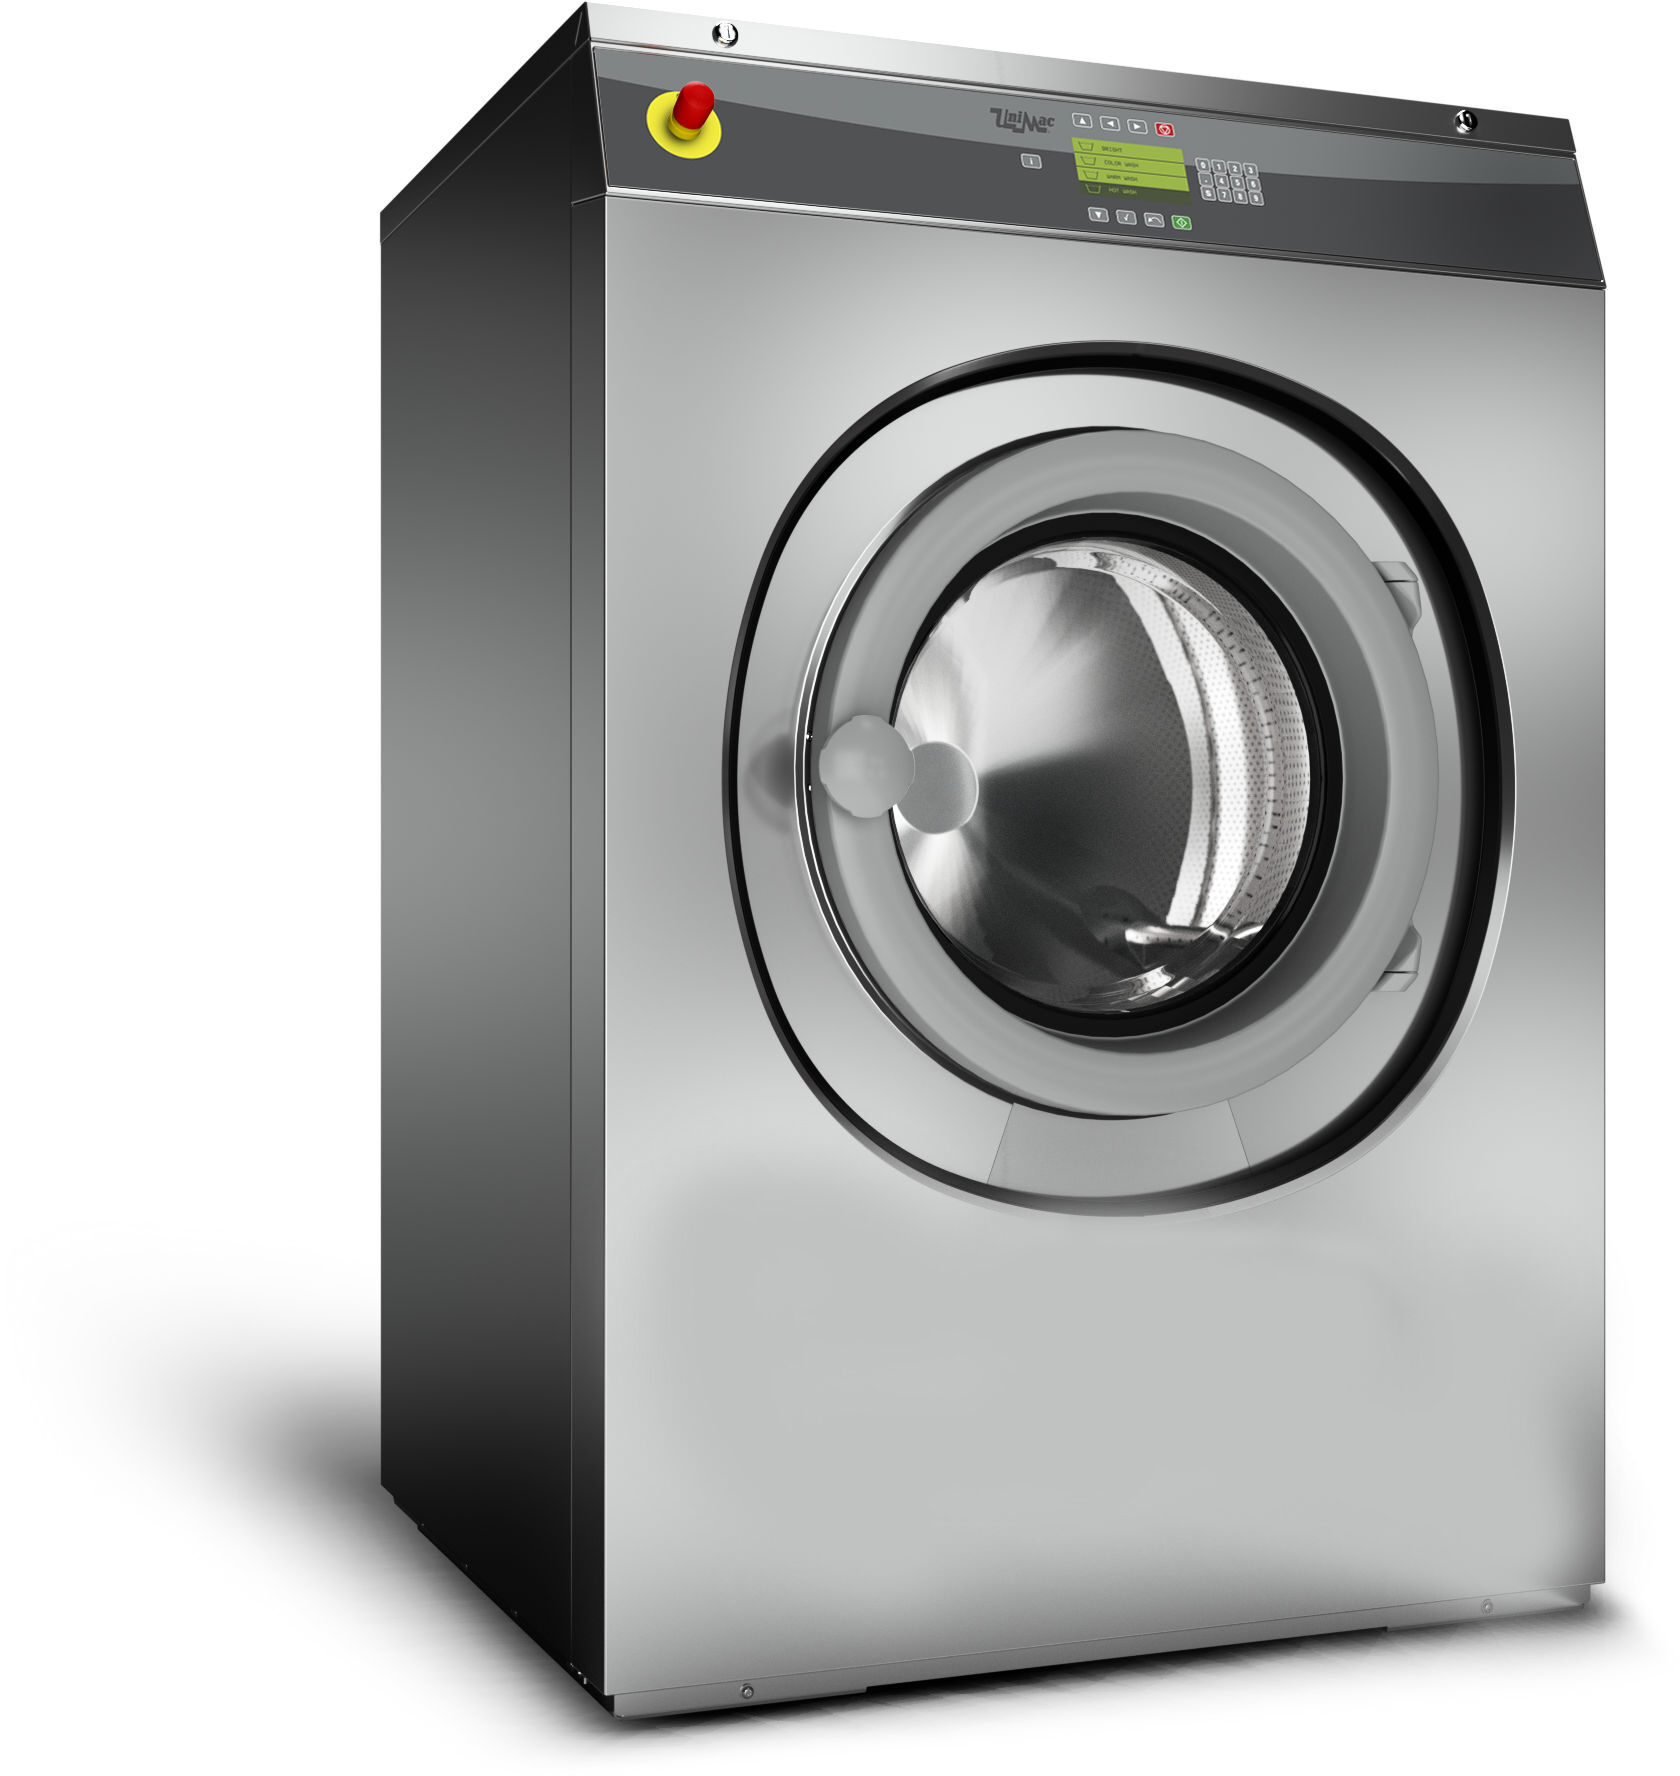 Высокоскоростная стирально-отжимная машина UniMac UY240